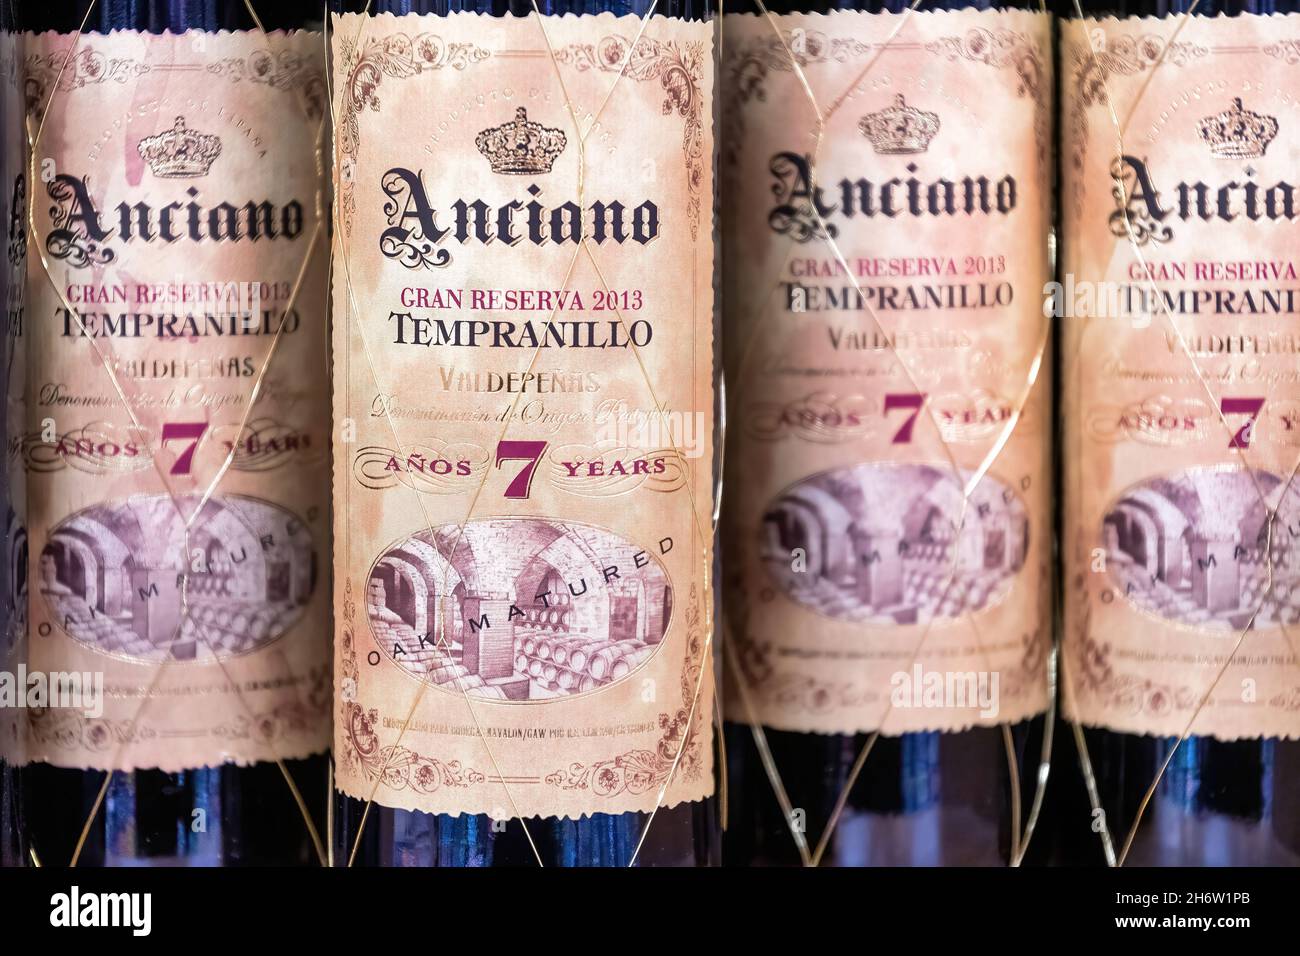 Bottiglie di vino rosso 'Anciano' prodotto con uve Tempranillo all'interno di un negozio LCBO.Nov. 18, 2021 Foto Stock